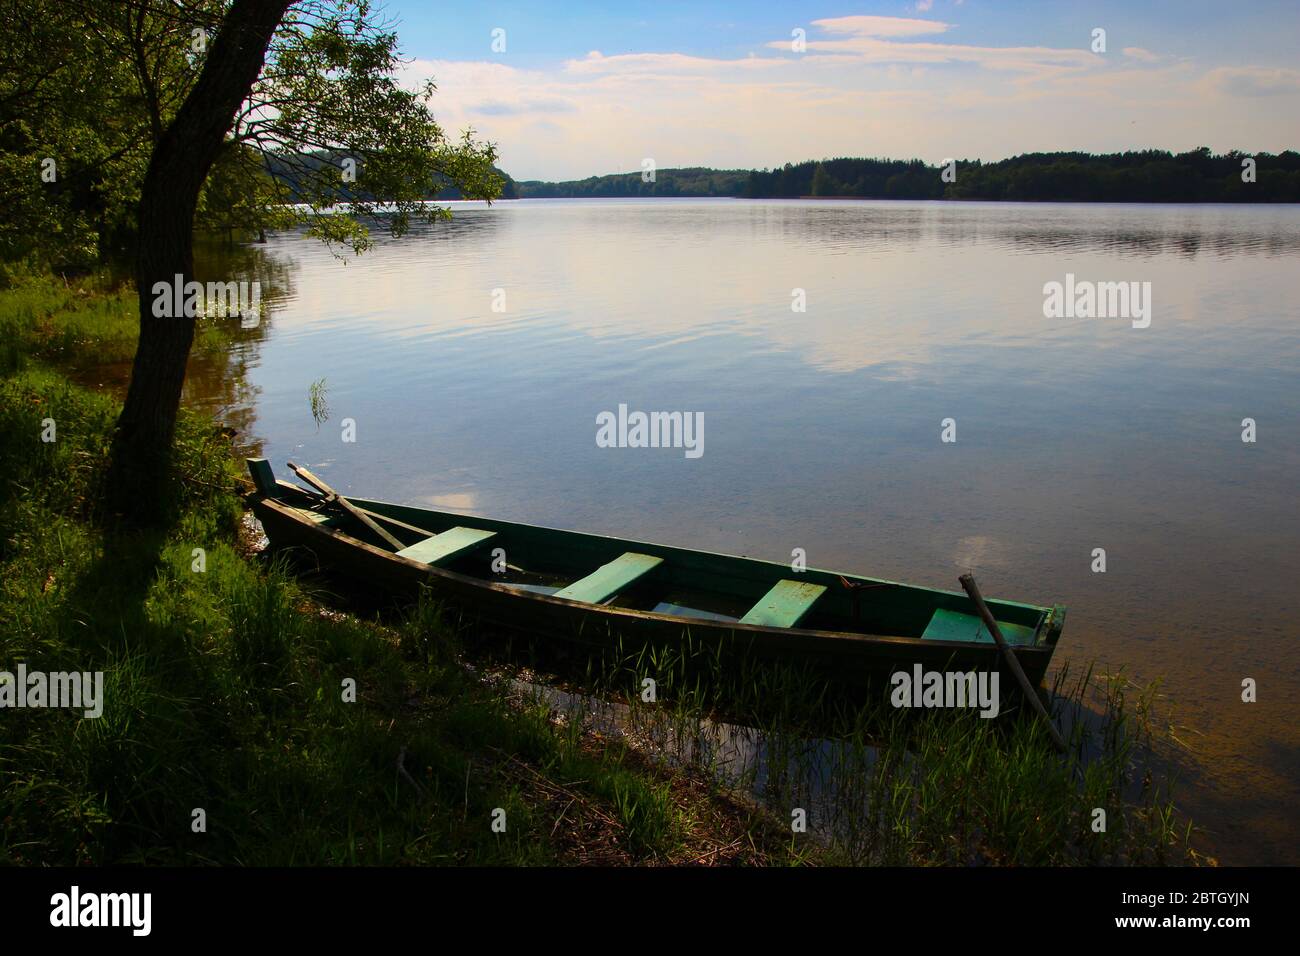 Ein kleines Holzboot am Ufer eines Sees während eines ruhigen, klaren Sommertages mit nahem Sonnenuntergang. Im Nationalpark Aukštaitija in Litauen. Stockfoto